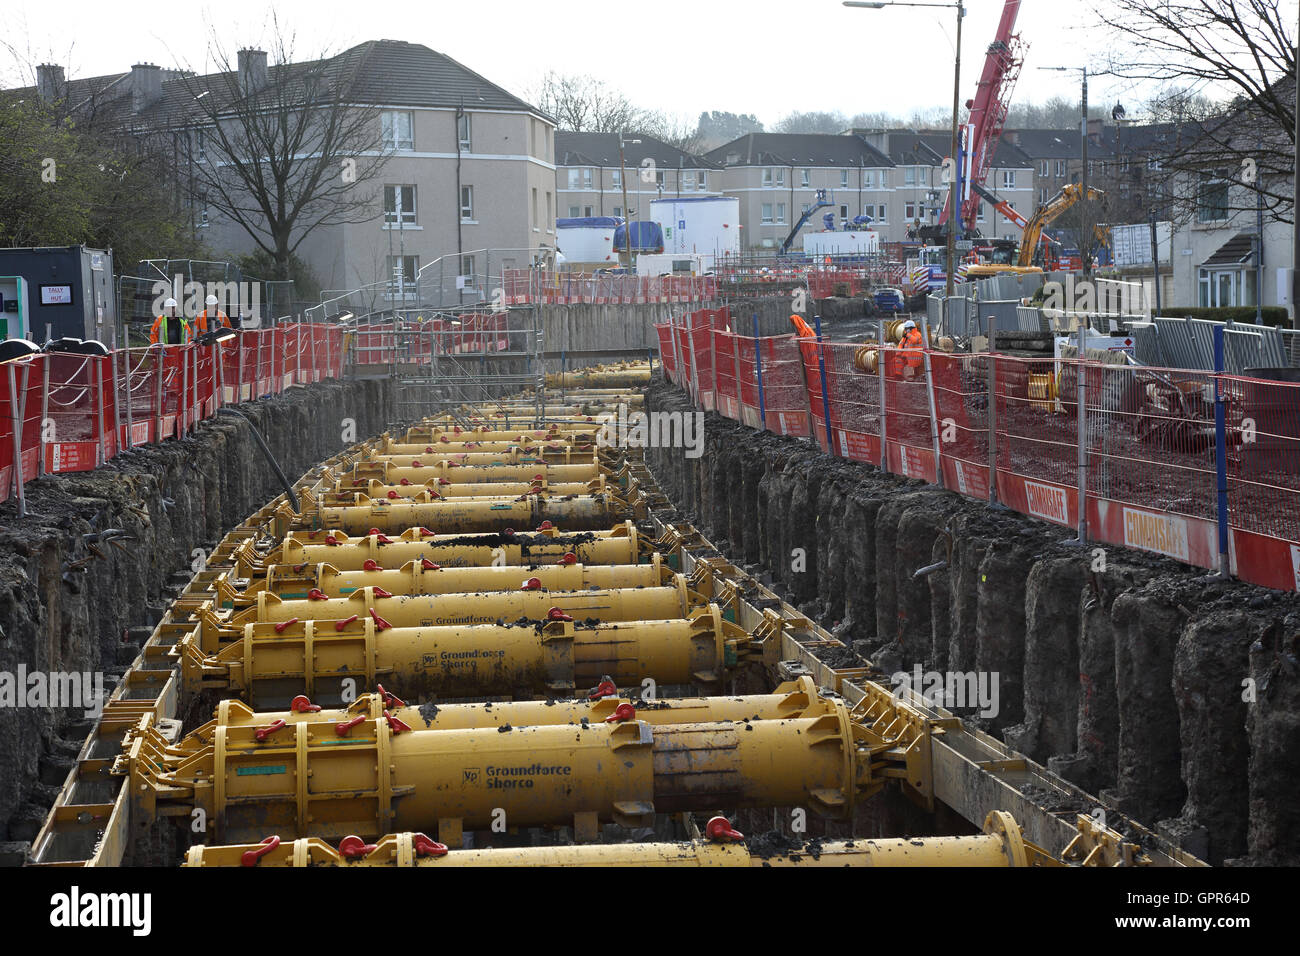 Die Baugrube für neue, große Durchmesser Kanalisation durch Schild Halle Bezirk von Glasgow. Zeigt Traggerüst und die umliegenden Häuser. Stockfoto